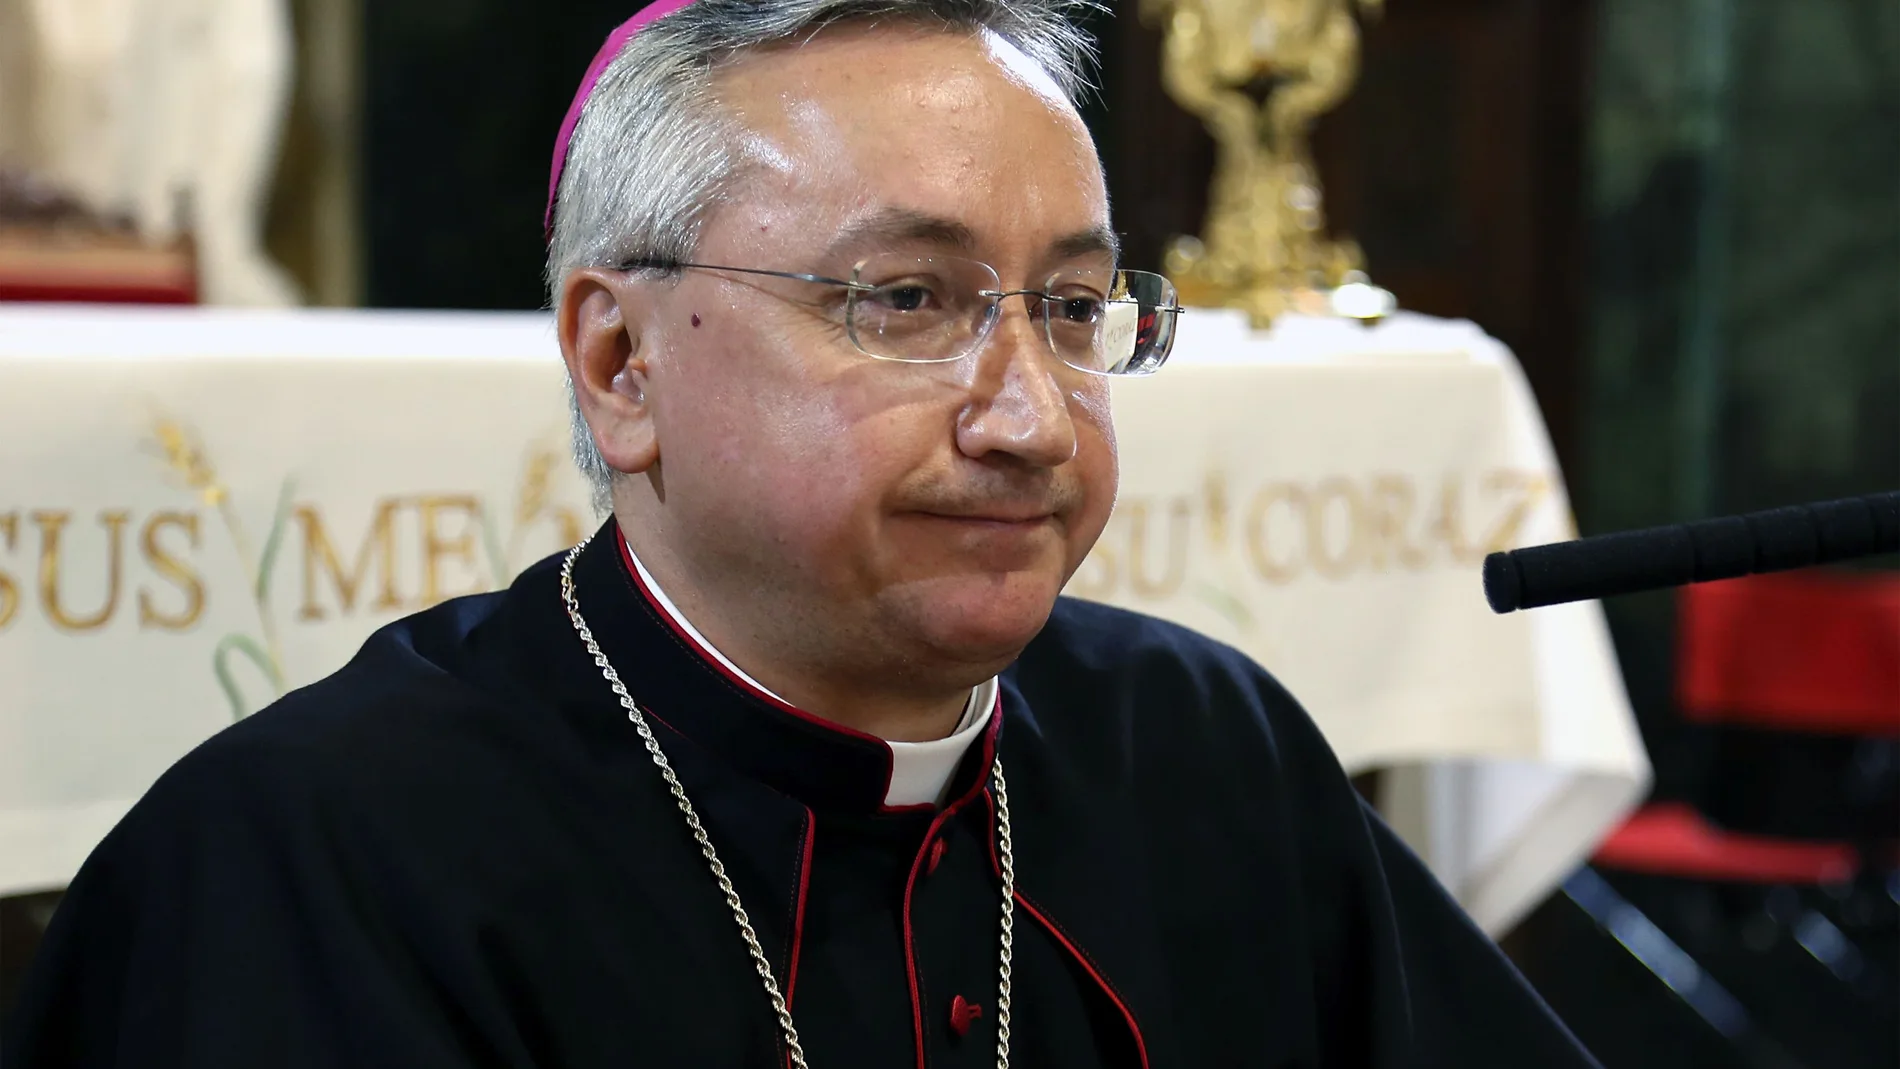 El nuevo obispo de Jerez, José Rico Pavés